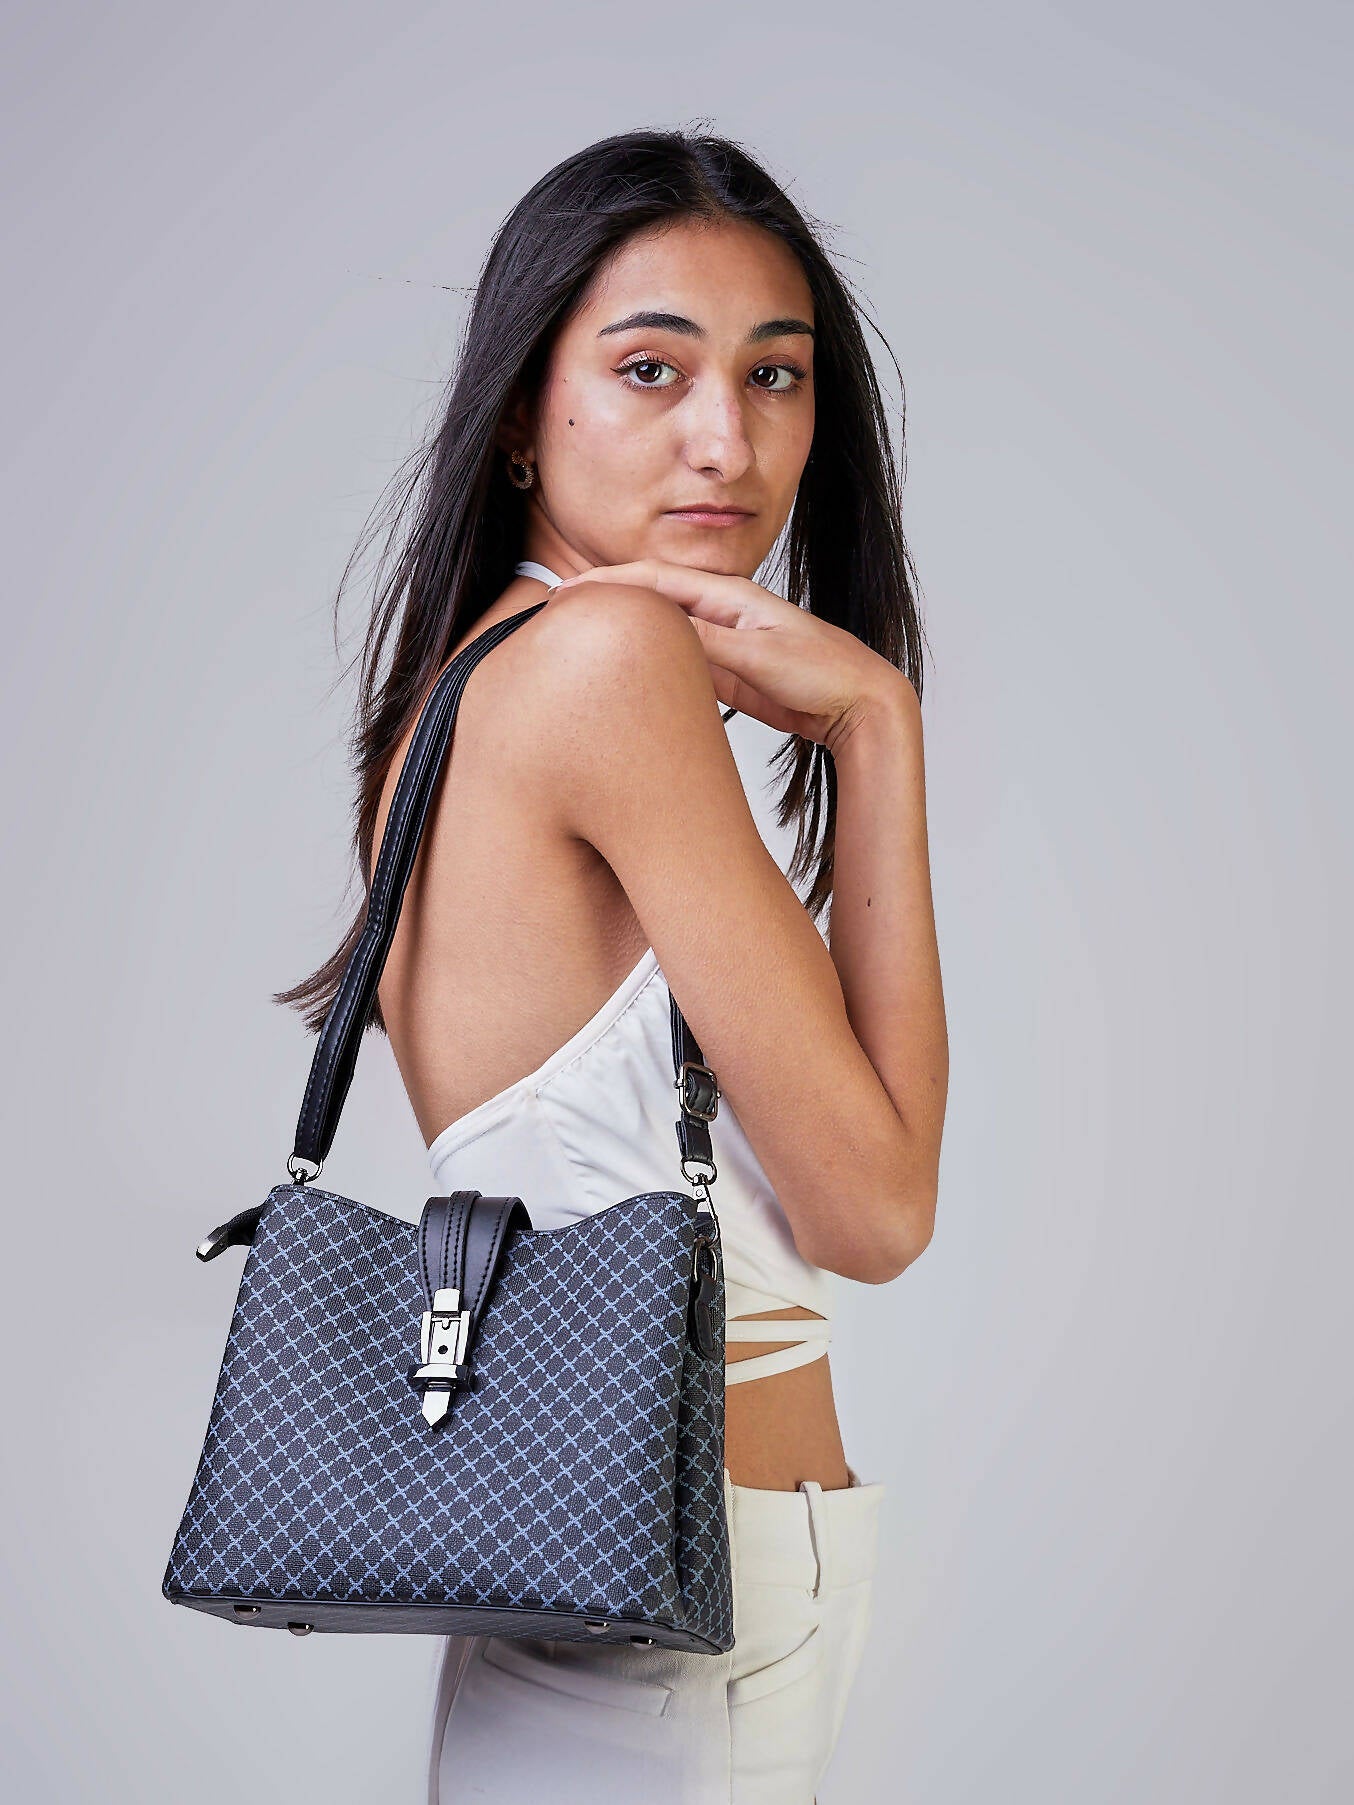 Slaks World Fashion Medium Size Office Bag - Black - Shopzetu